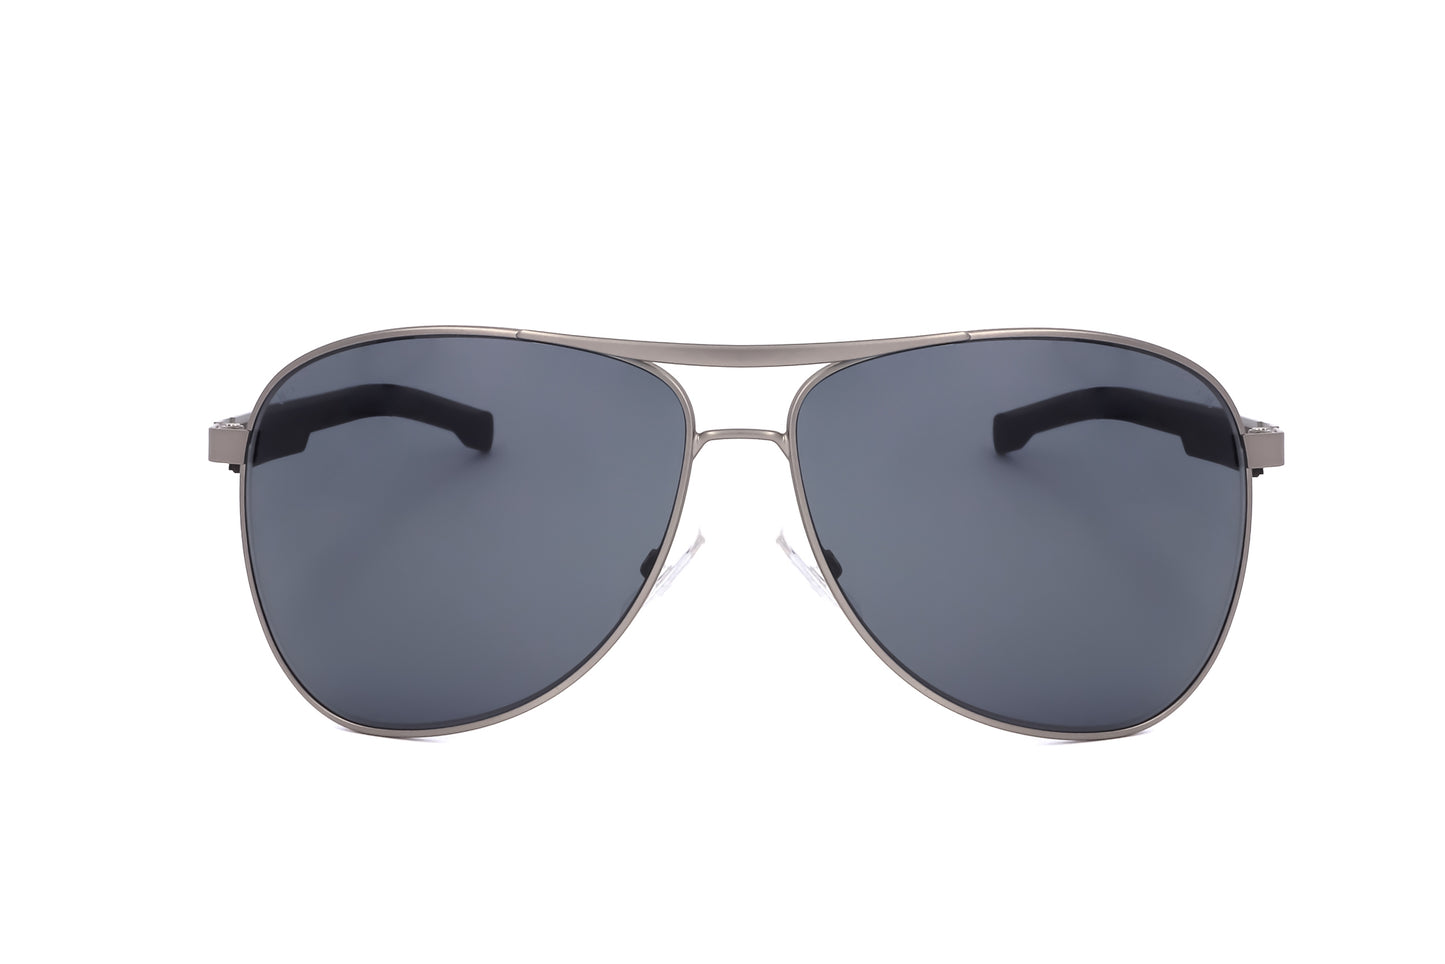 Hugo Boss Mens Sunglasses BOSS 1199 N S SVK 63 13 140 MATTE RUTHENIUM BLACK